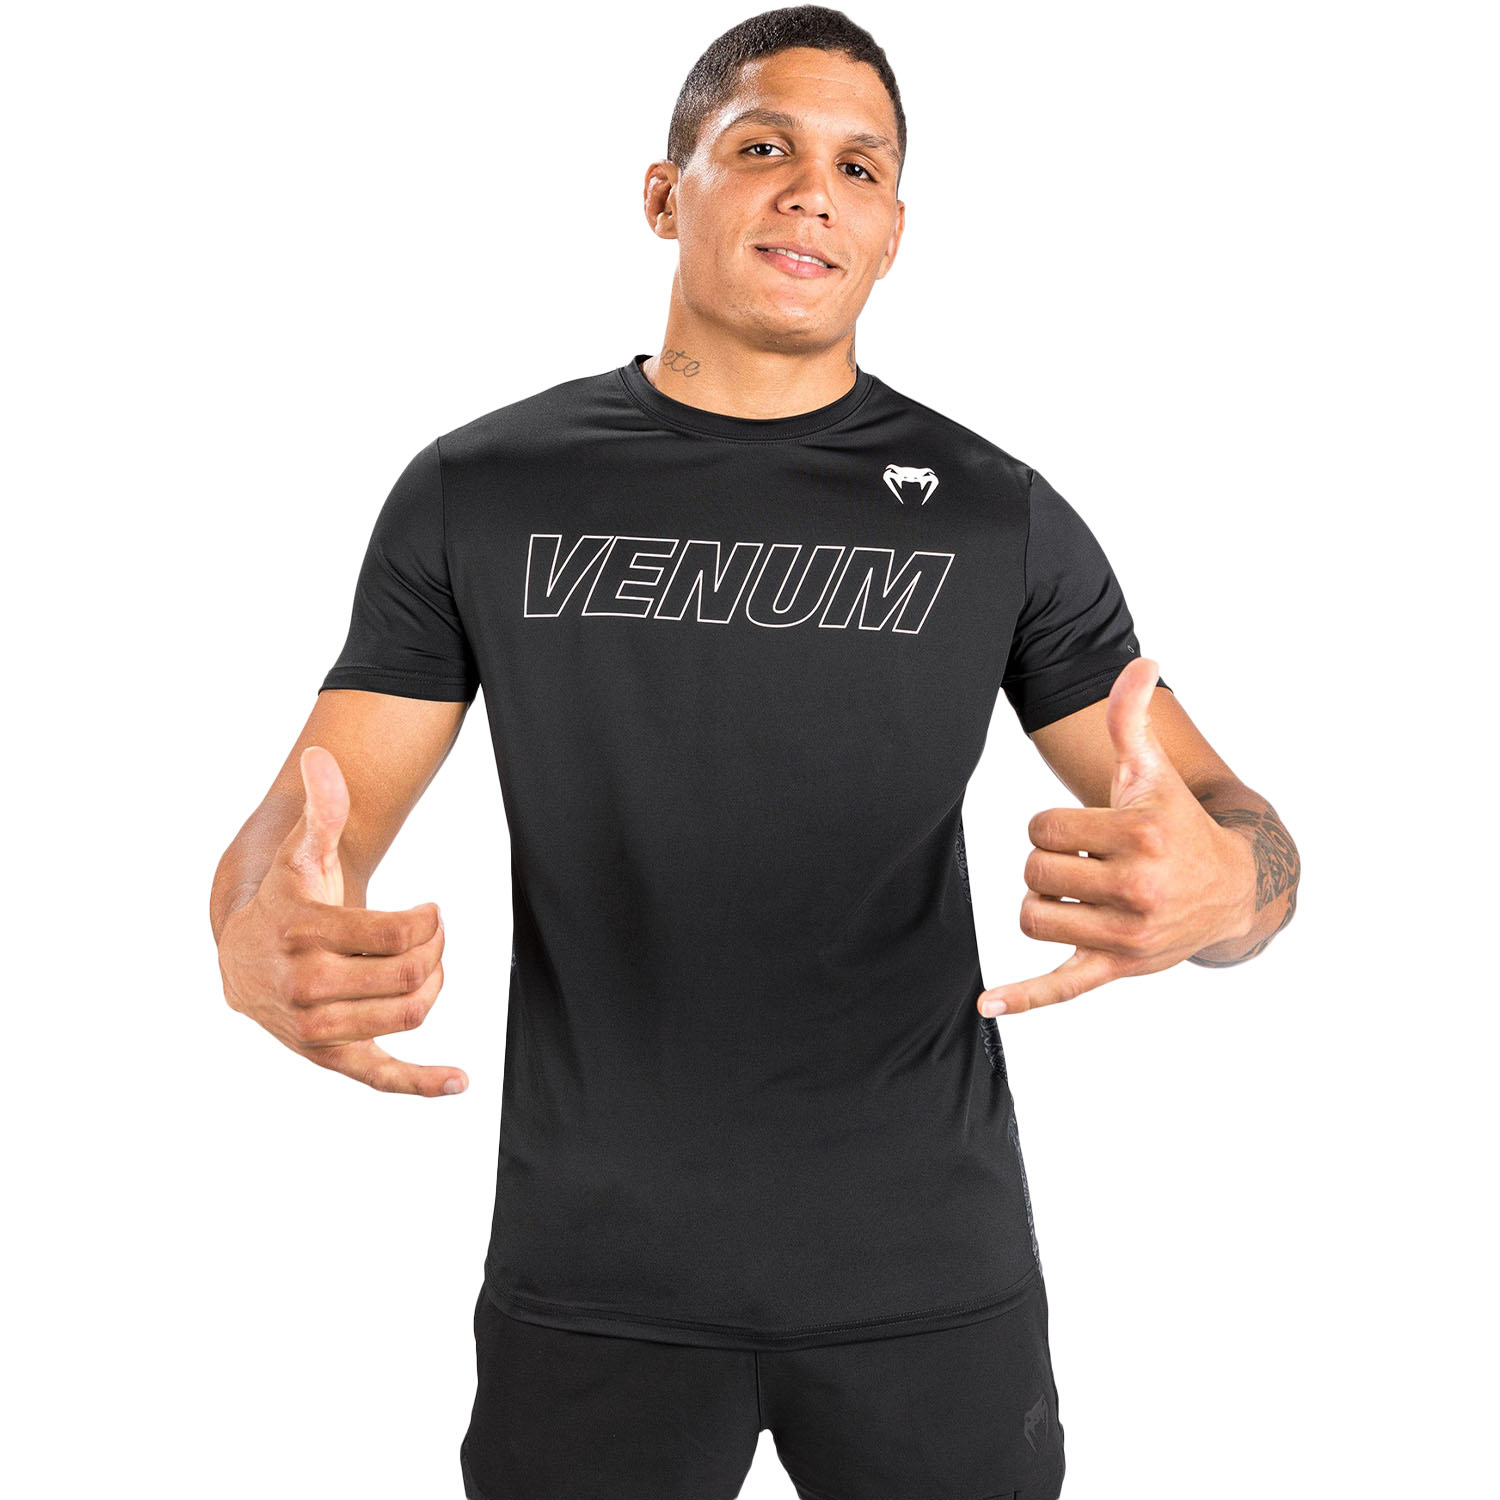 VENUM Dry Tech T-Shirt, Classic Evo, schwarz-weiß, S